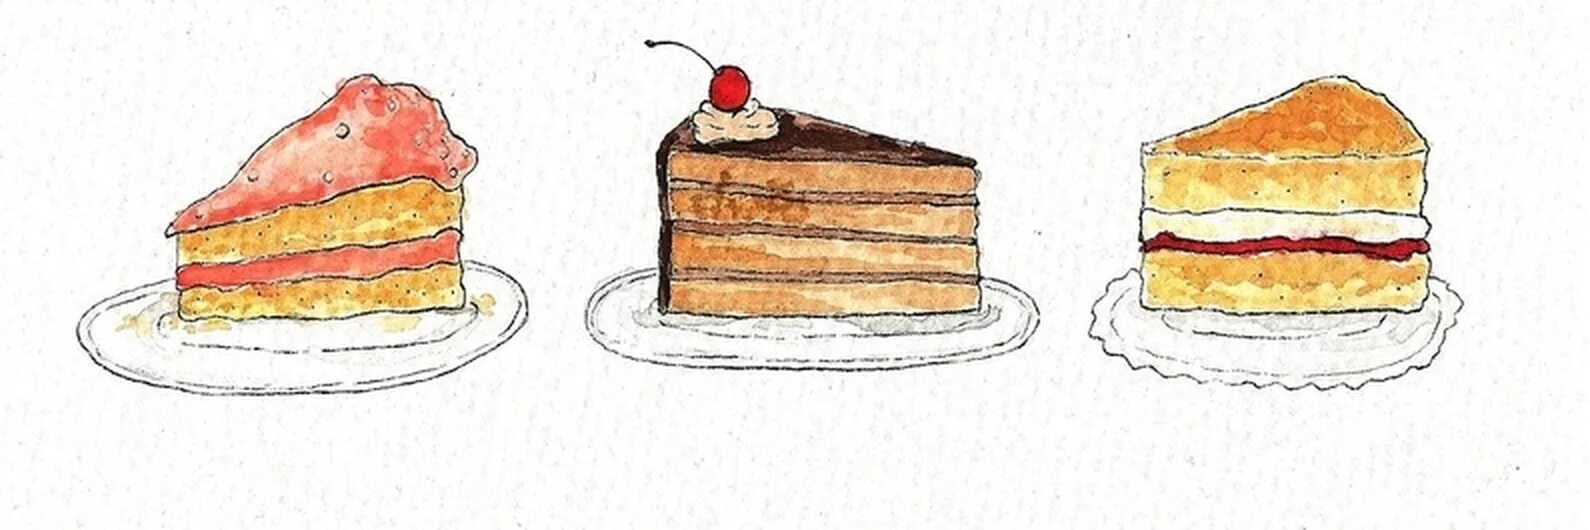 Торт рисунок. Кусок торта для срисовки. Кусок торта рисунок. Кусок торта рисунок легкий. Кусок торта на тарелке рисунок